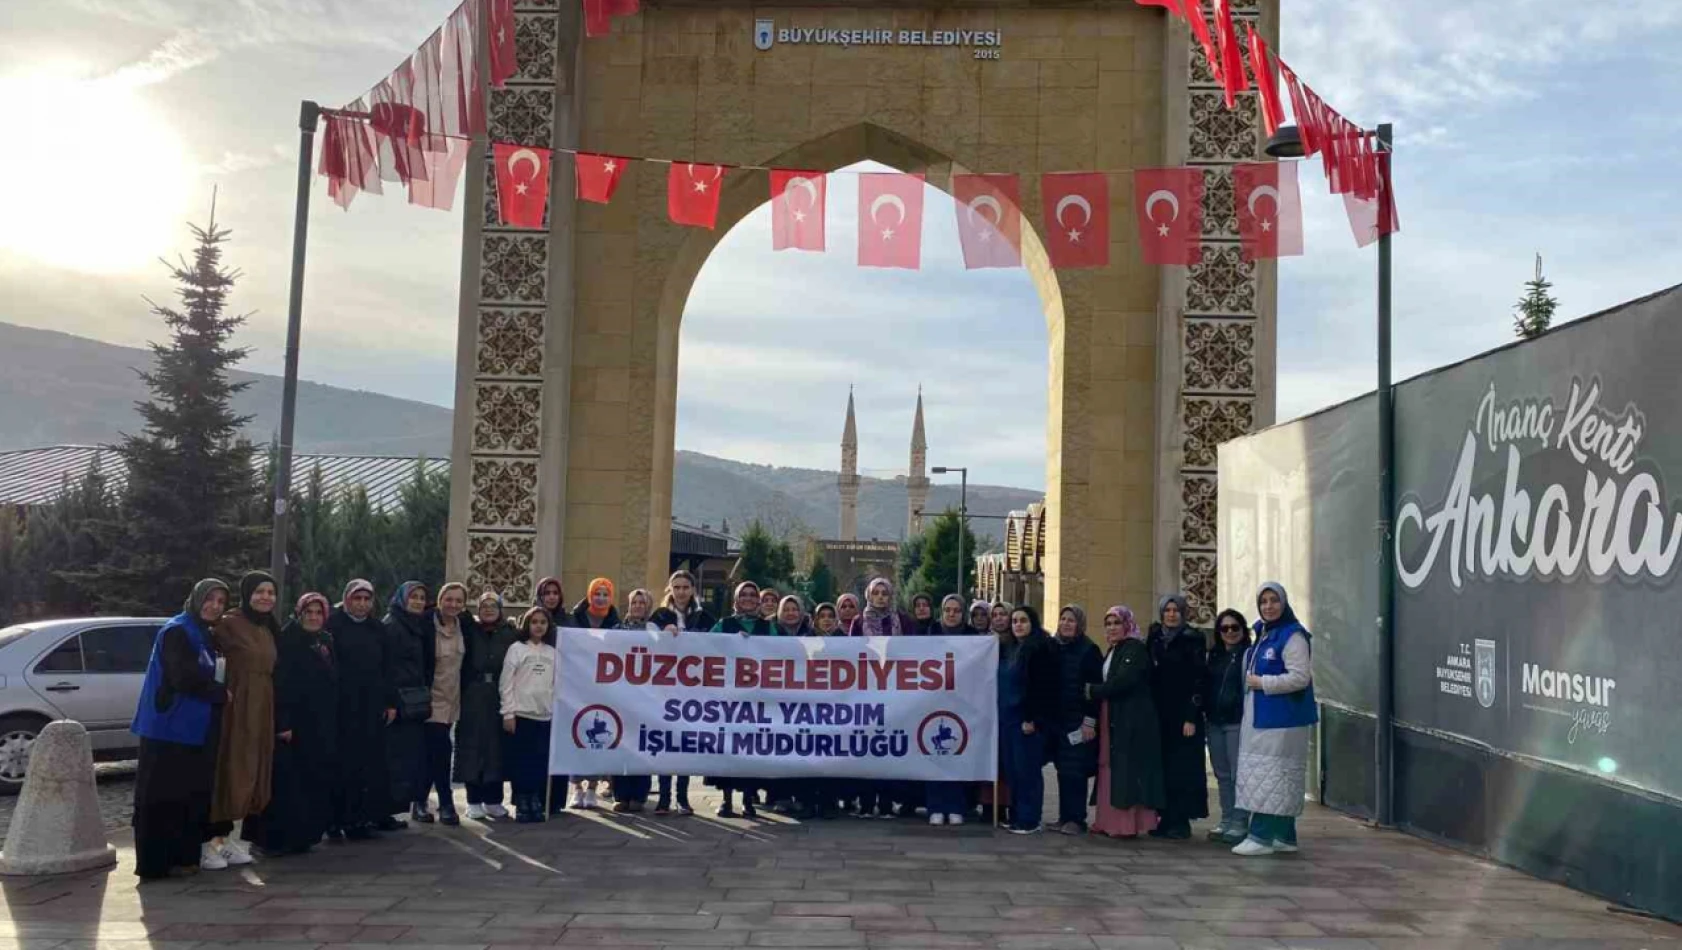 Ankara'nın tarihi mekanlarını gezdiler